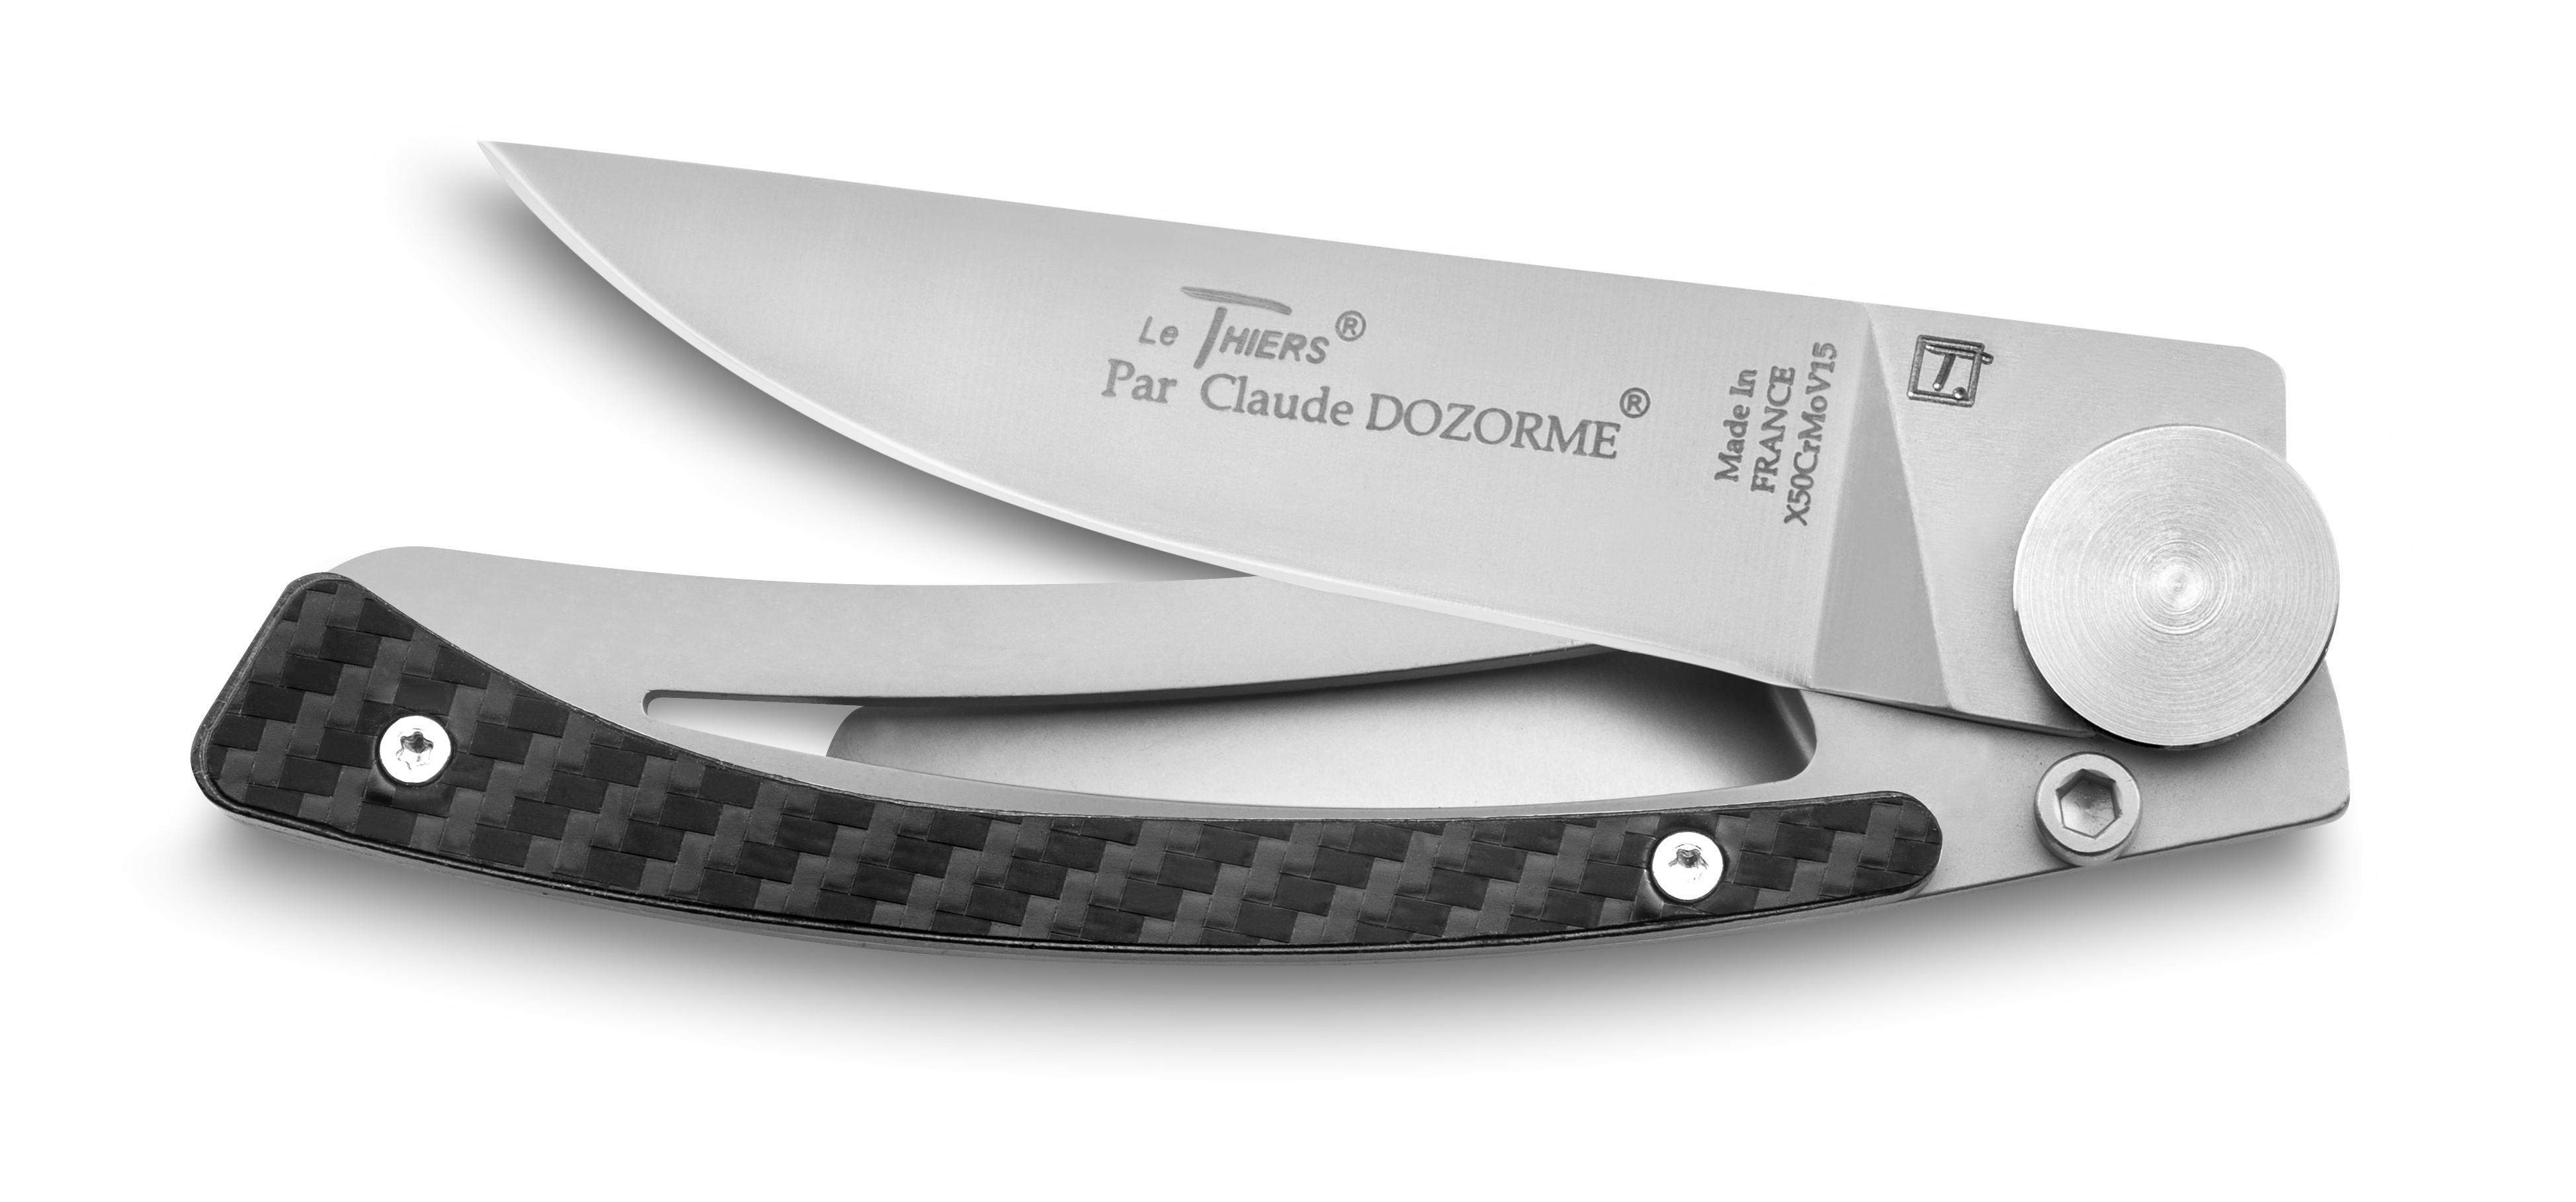 Couteau office Le Thiers® gamme cuisine au quotidien de Claude